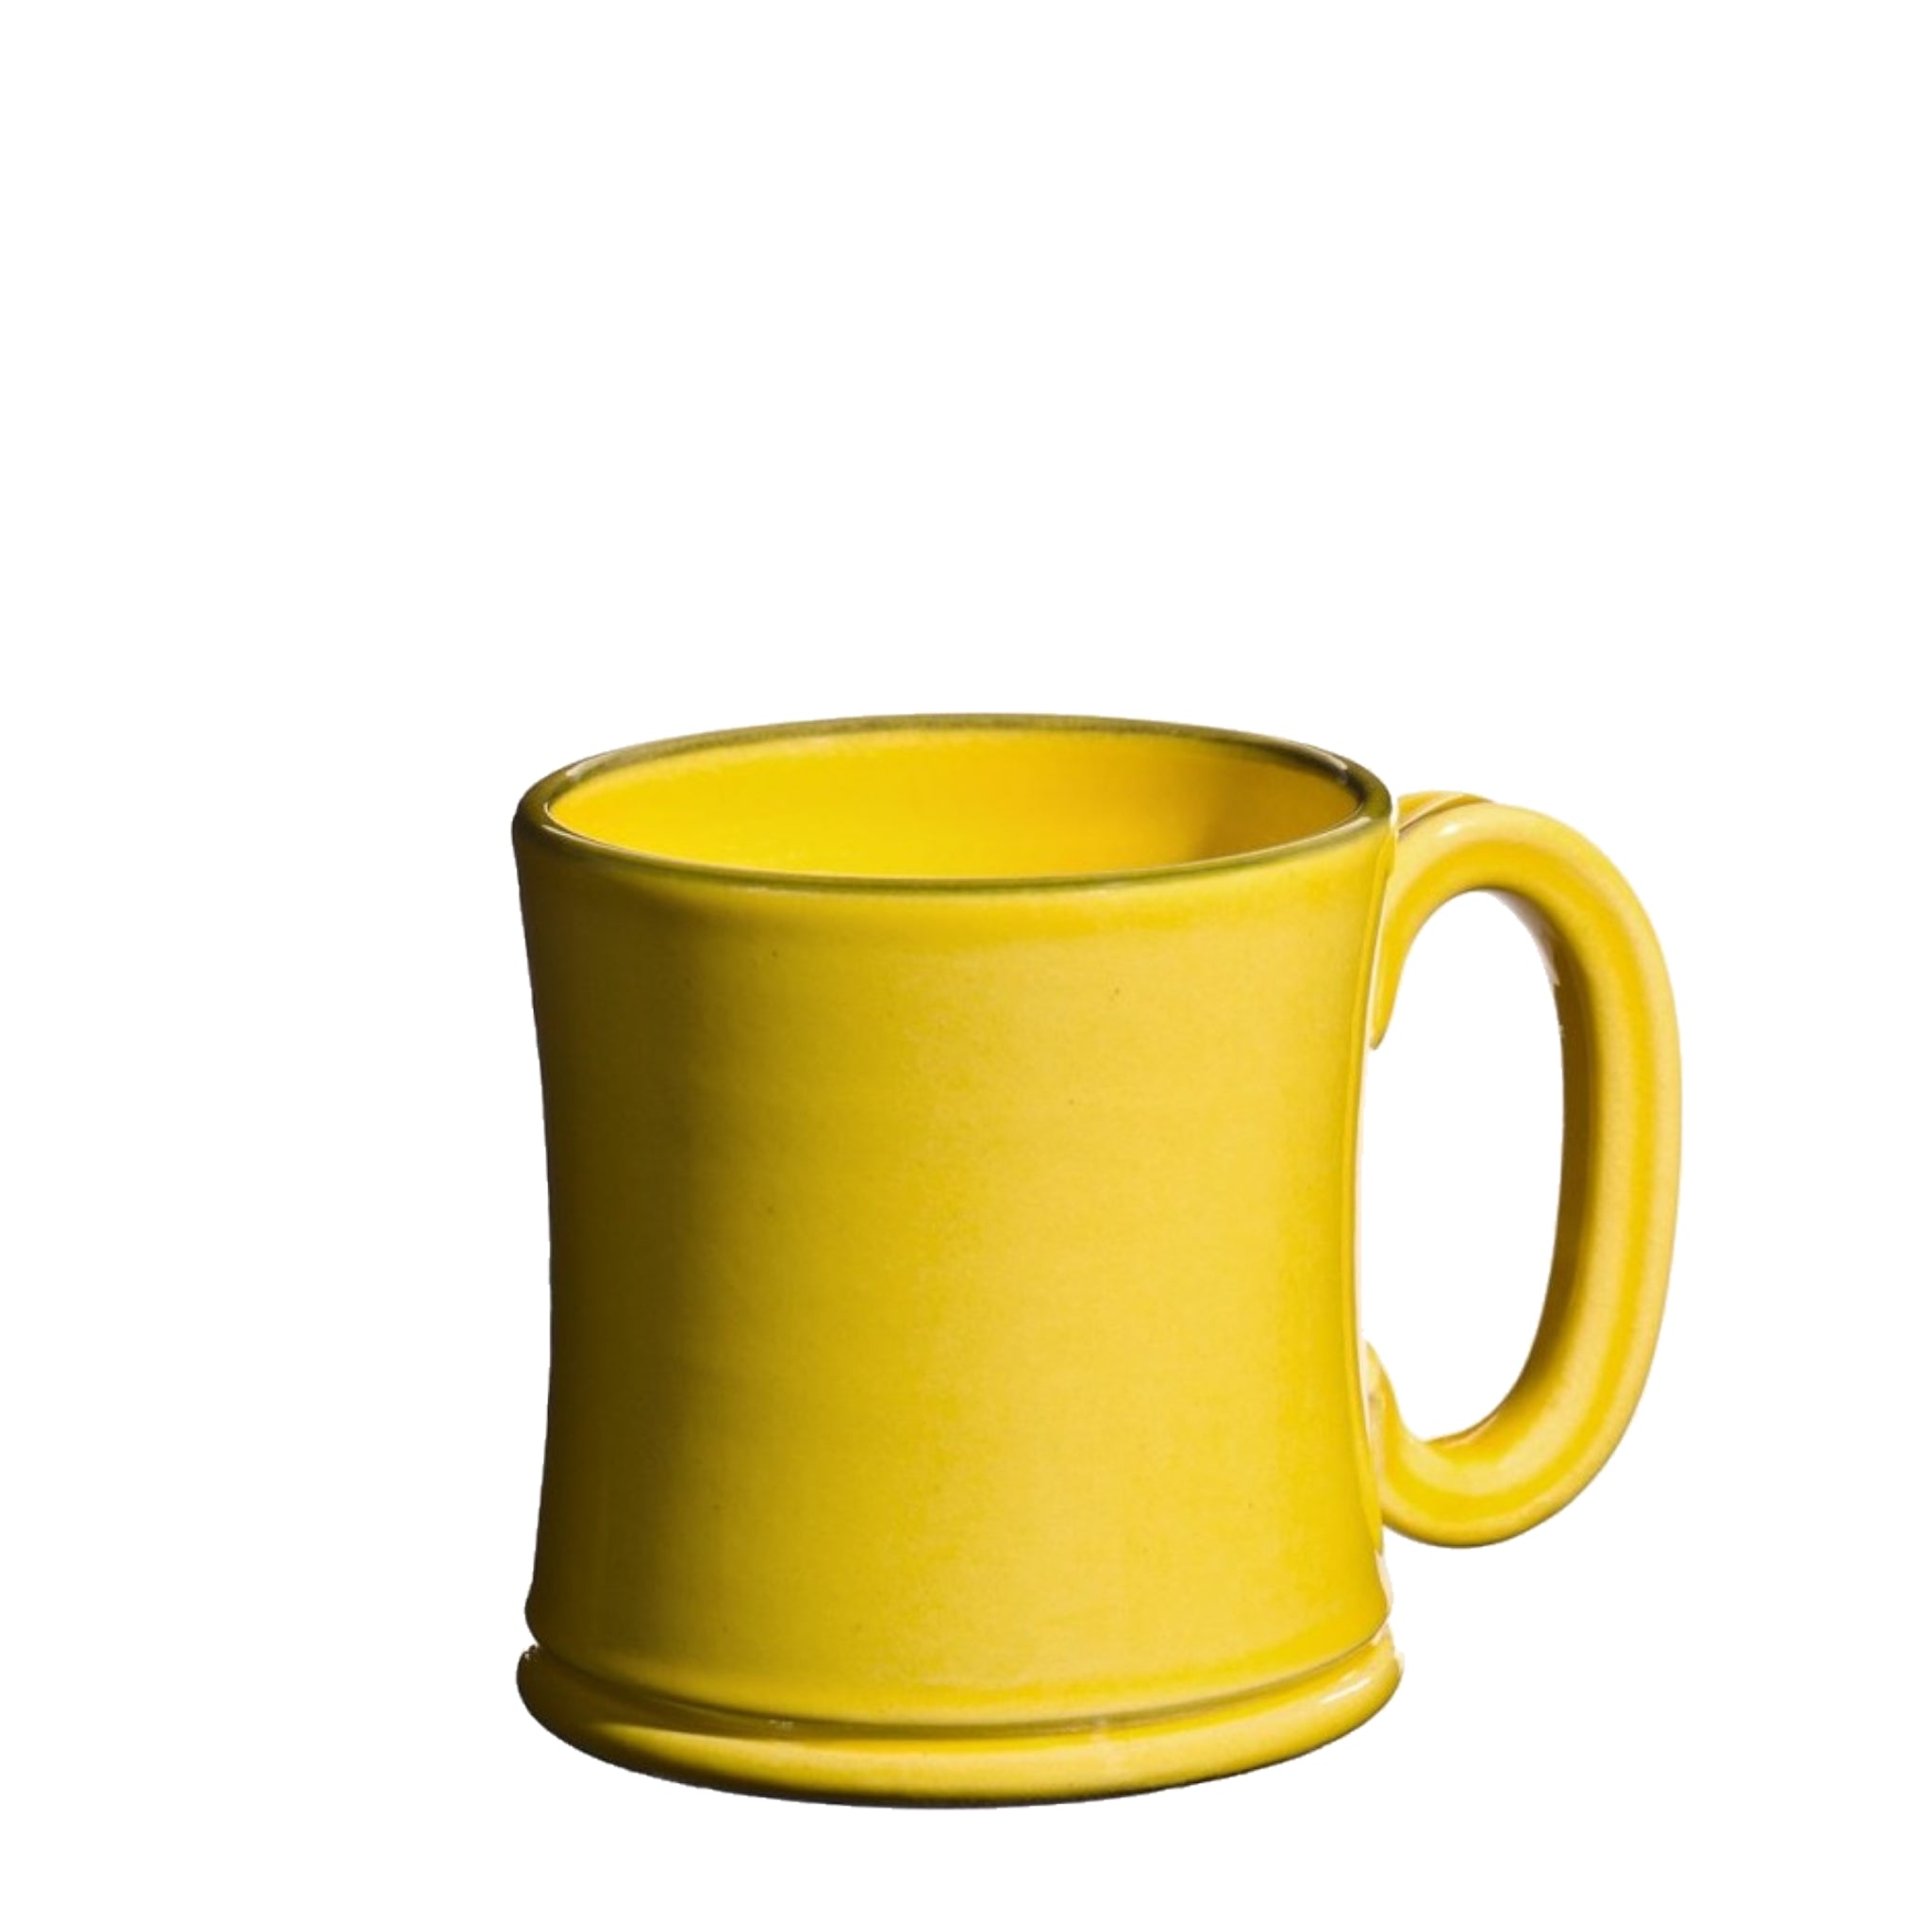 Håndlavet keramikkrus i farven gul fra Atelier Bernex, Oliviers & Co